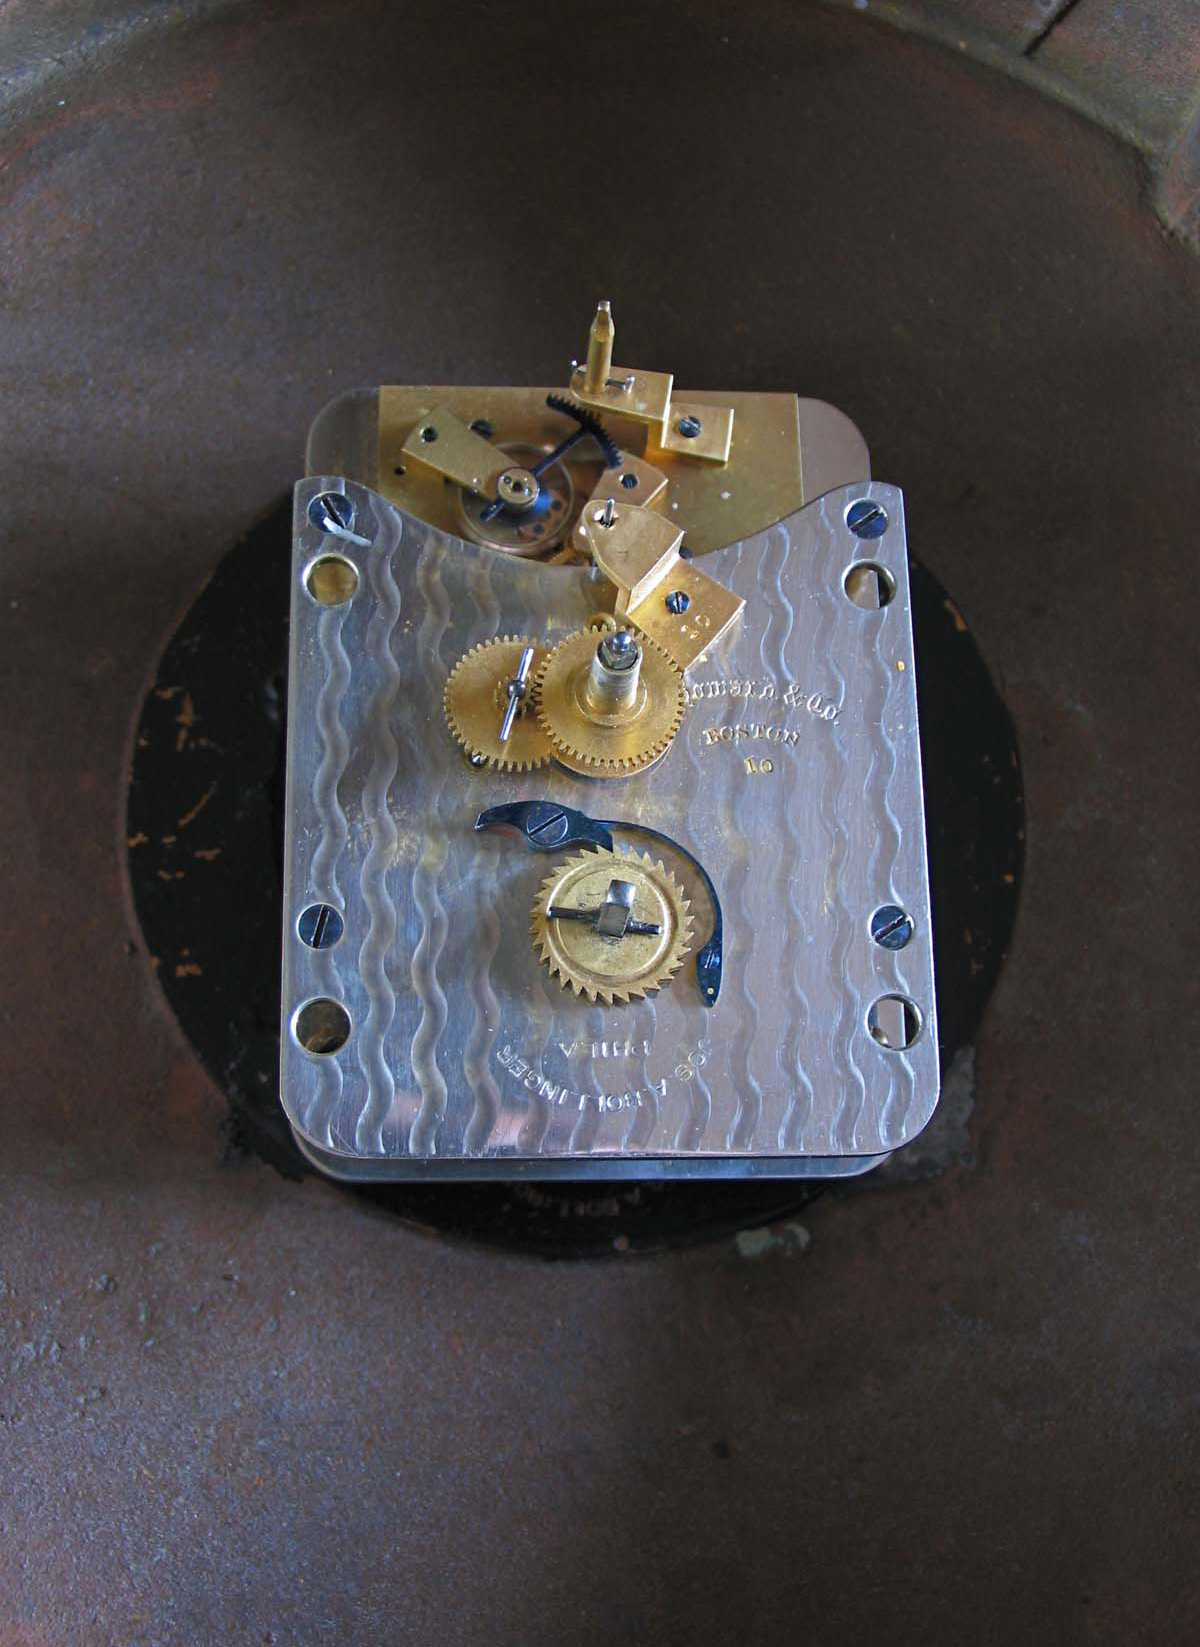 E. Howard 12 inch Marine Clock - W. W. Lindsay Company